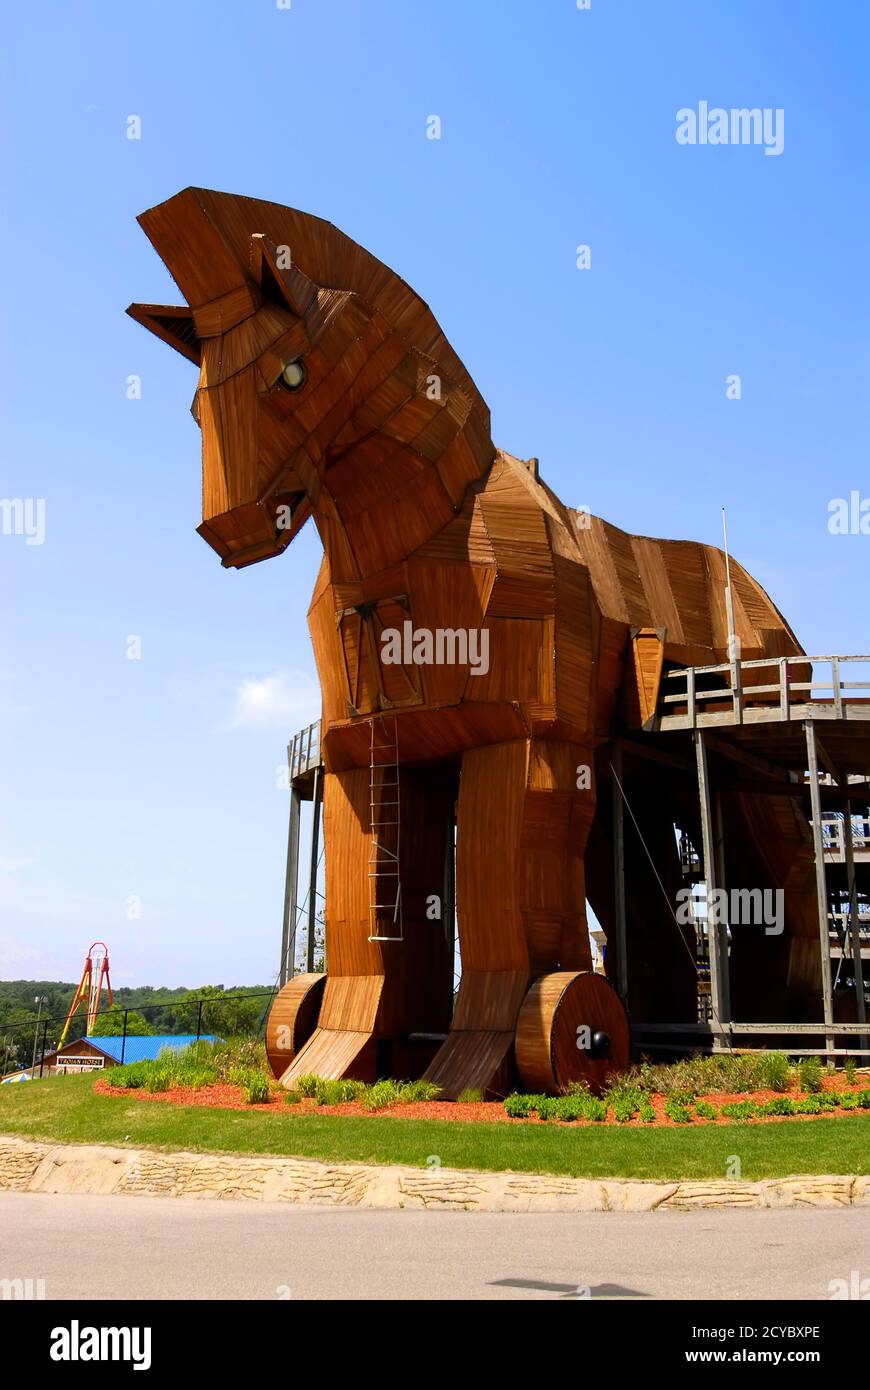 Trojanisches Pferd im Mt Olympus Theme Park, Wisconsin Dells, WI ist eine Hauptattraktion im Wisconsin Dells in Wisconsin und nur ein beliebtes Resortgebiet Stockfoto